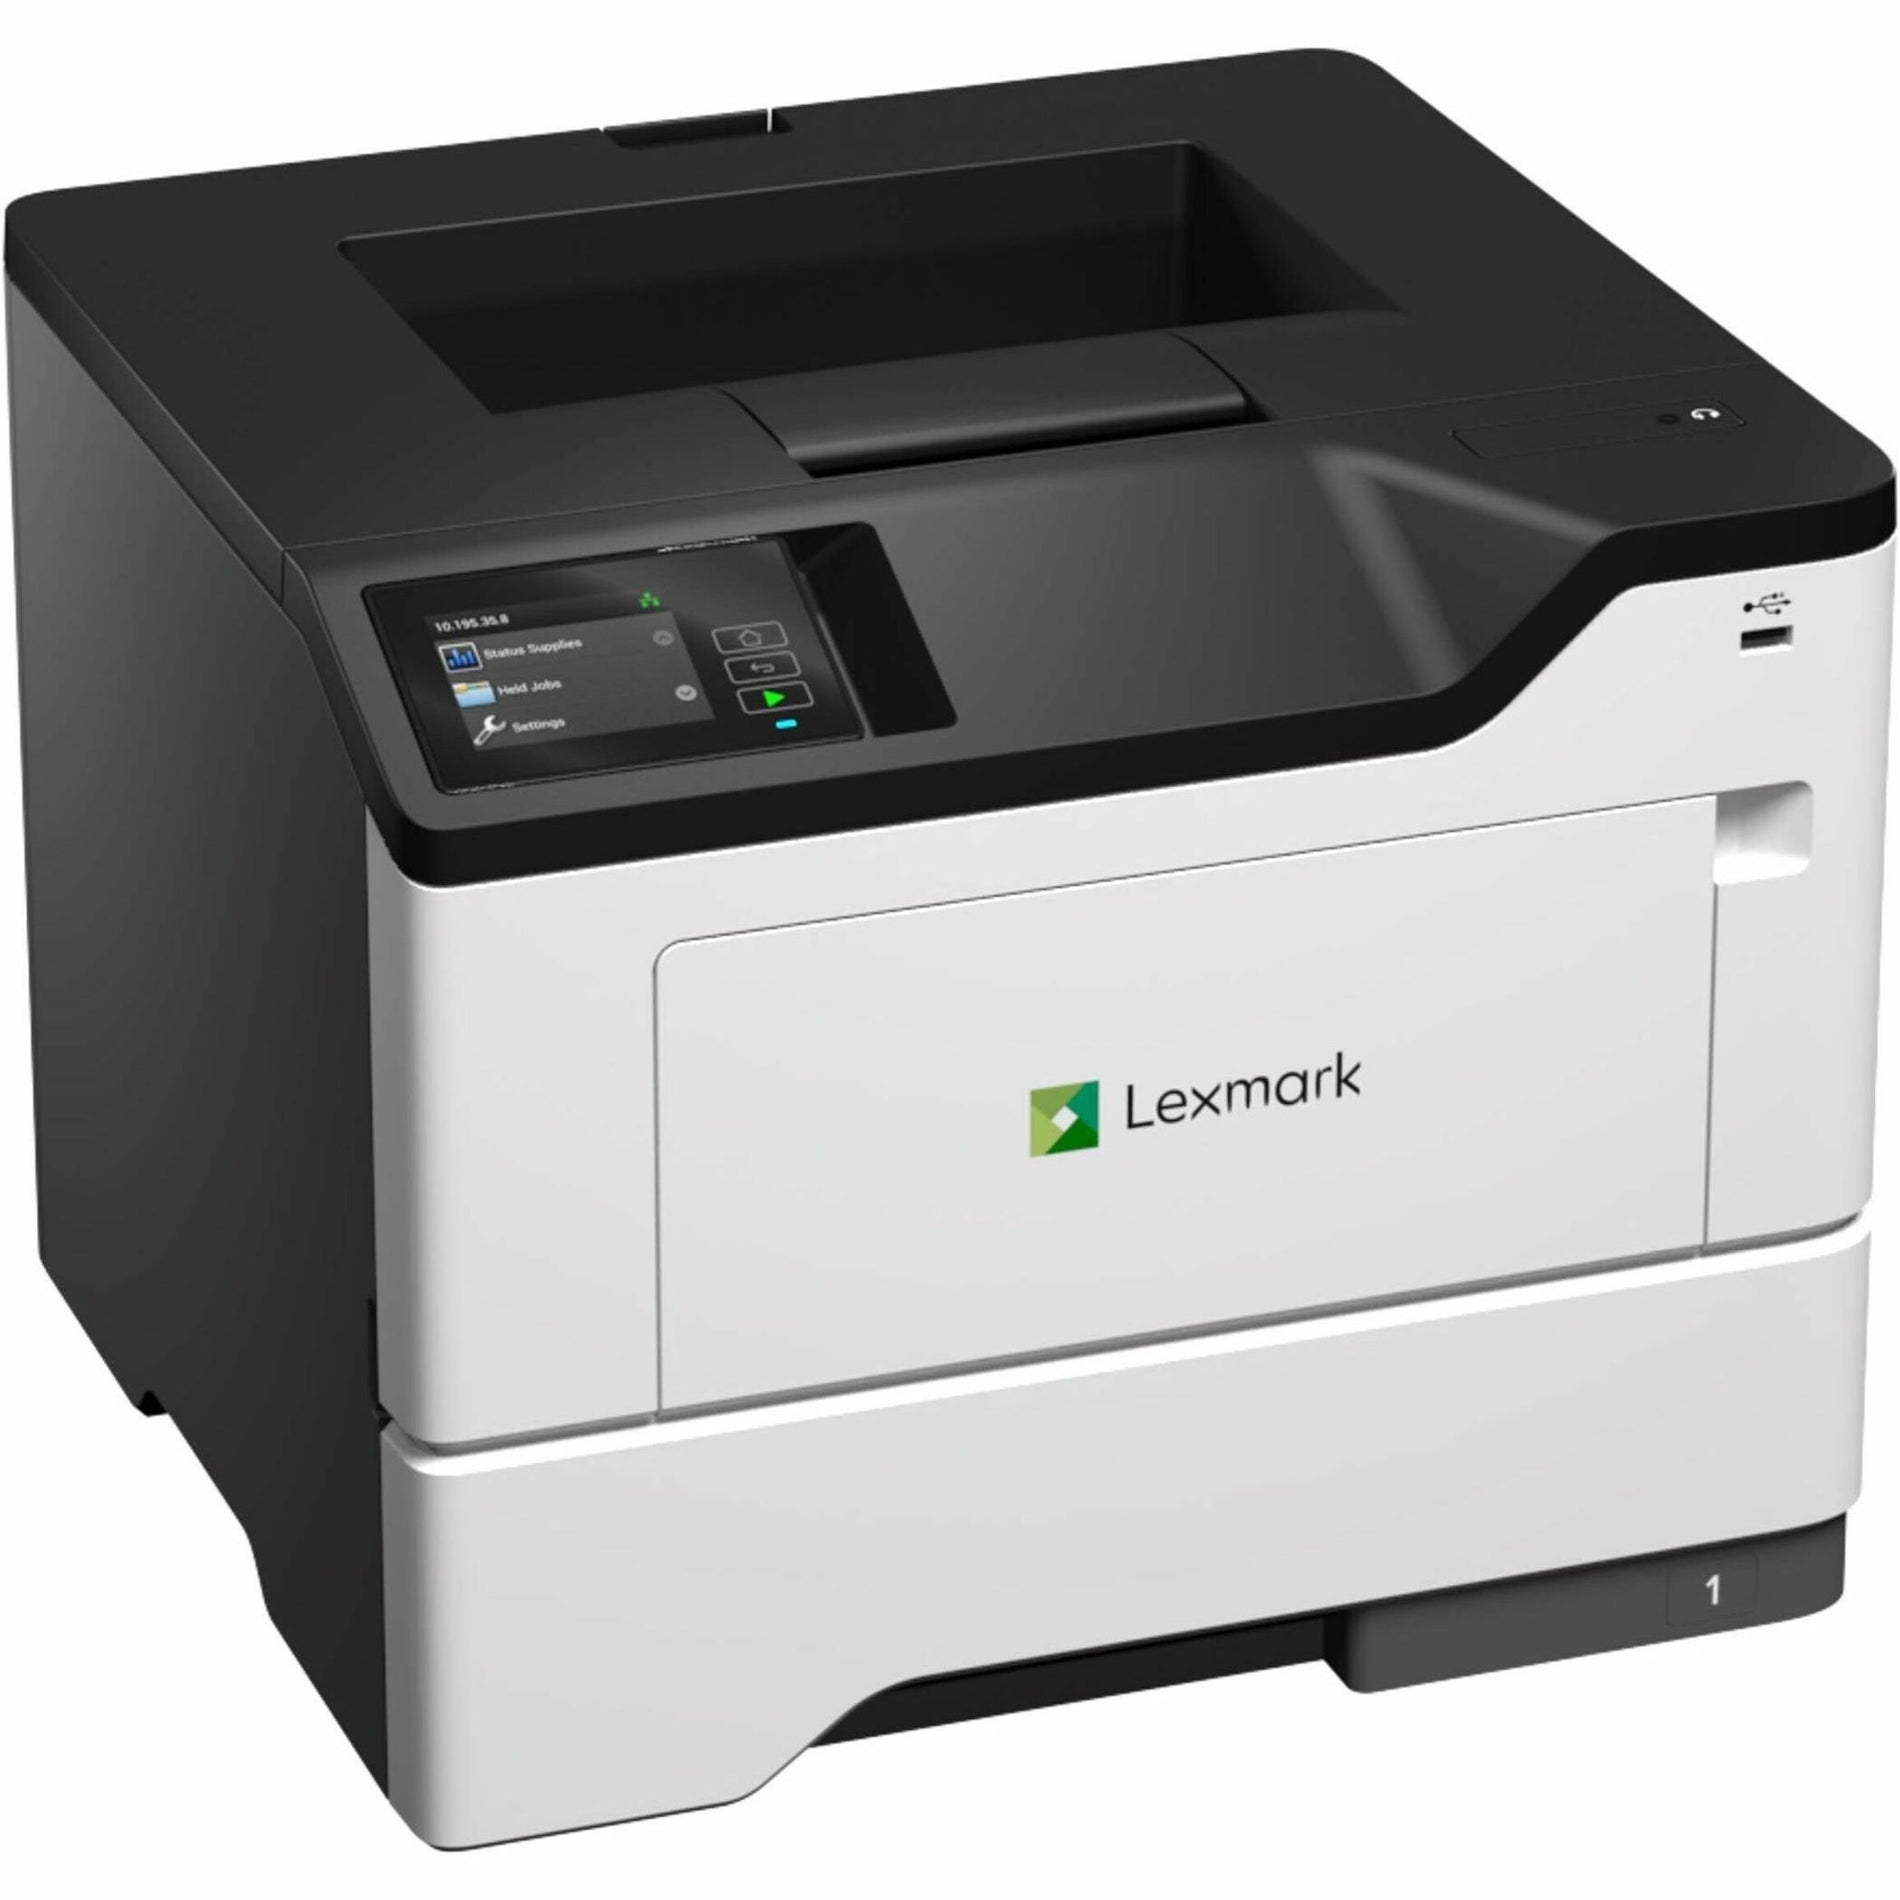 Lexmark 38S0400 MS631dw Desktop Wired Laser Printer - Monochrom TAA konform